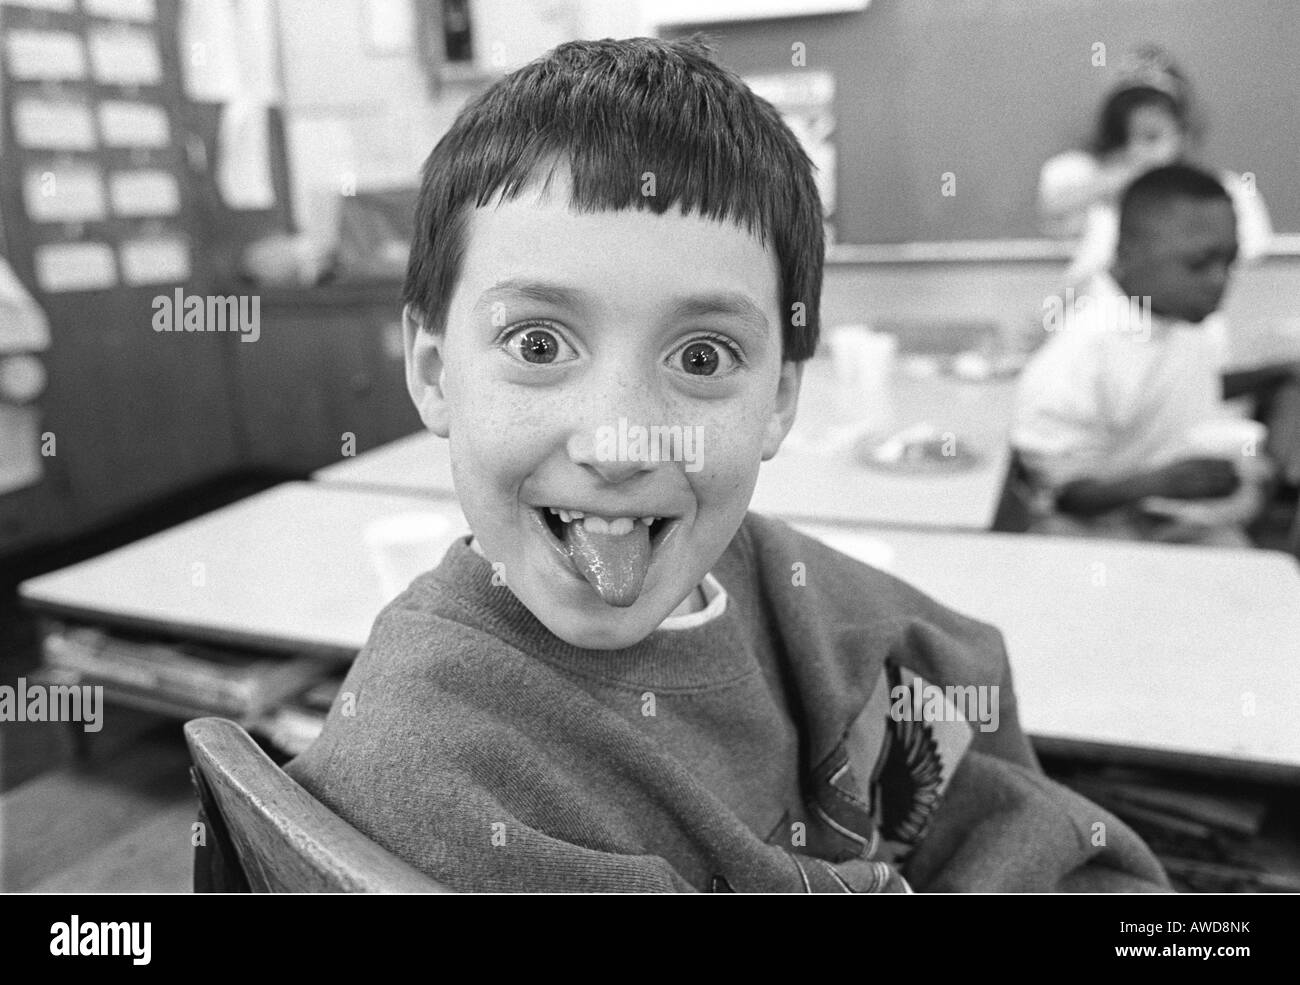 Scuola elementare bambino facendo una faccia per la fotocamera Foto Stock